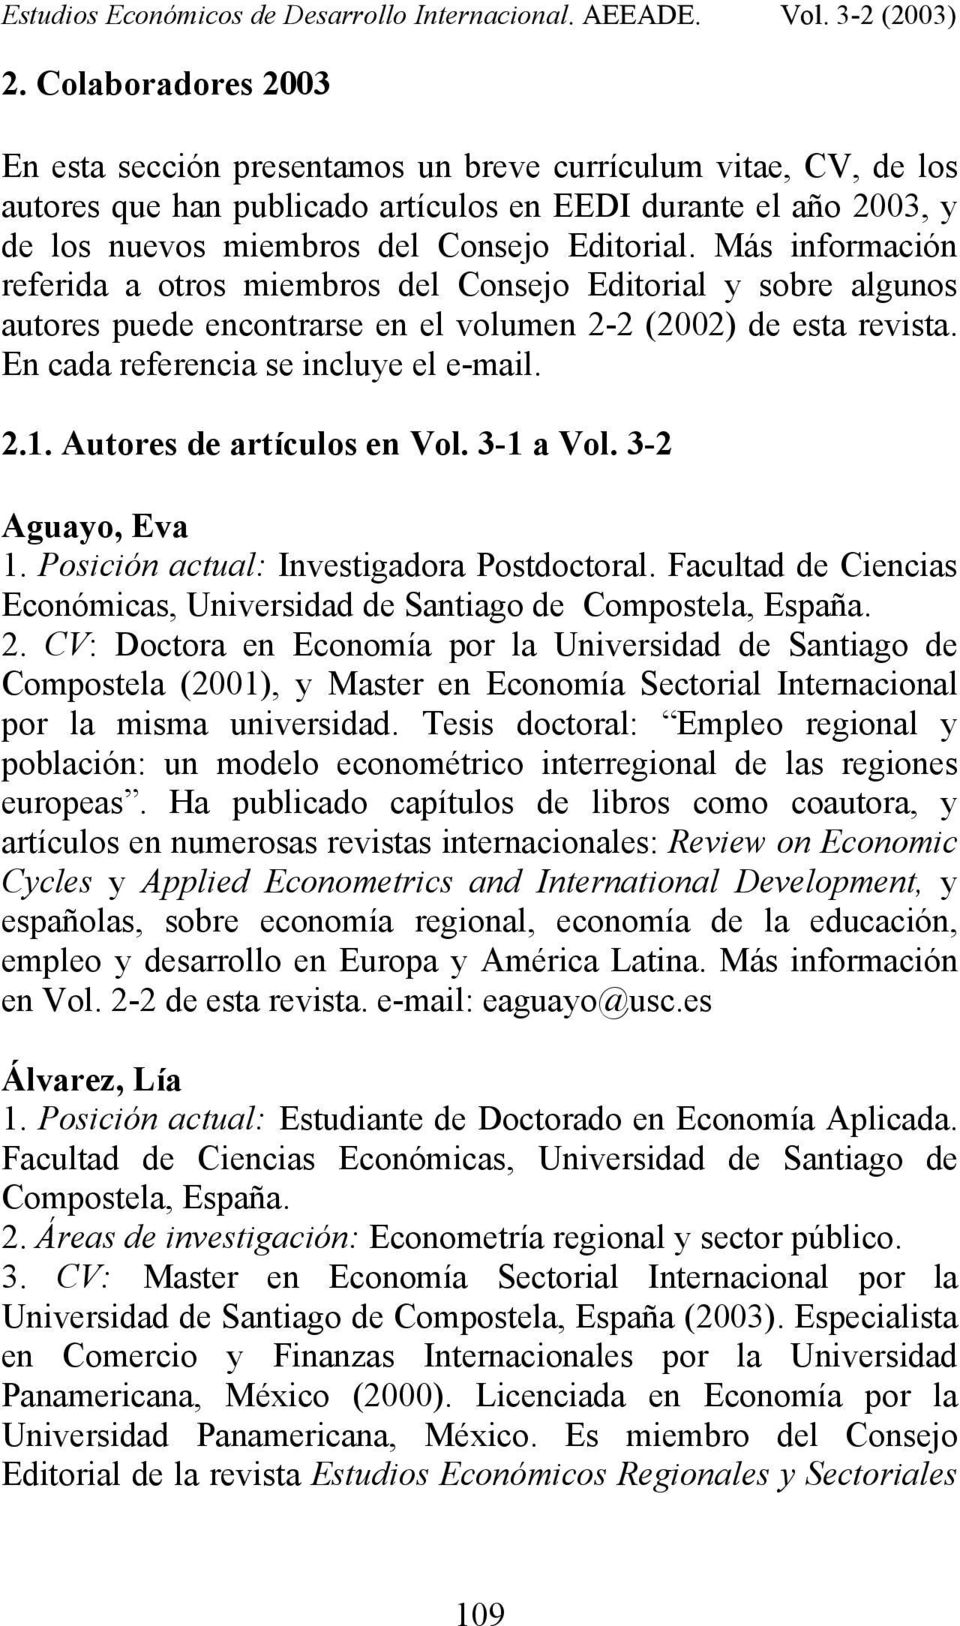 Autores de artículos en Vol. 3-1 a Vol. 3-2 Aguayo, Eva 1. Posición actual: Investigadora Postdoctoral. Facultad de Ciencias Económicas, Universidad de Santiago de 2.